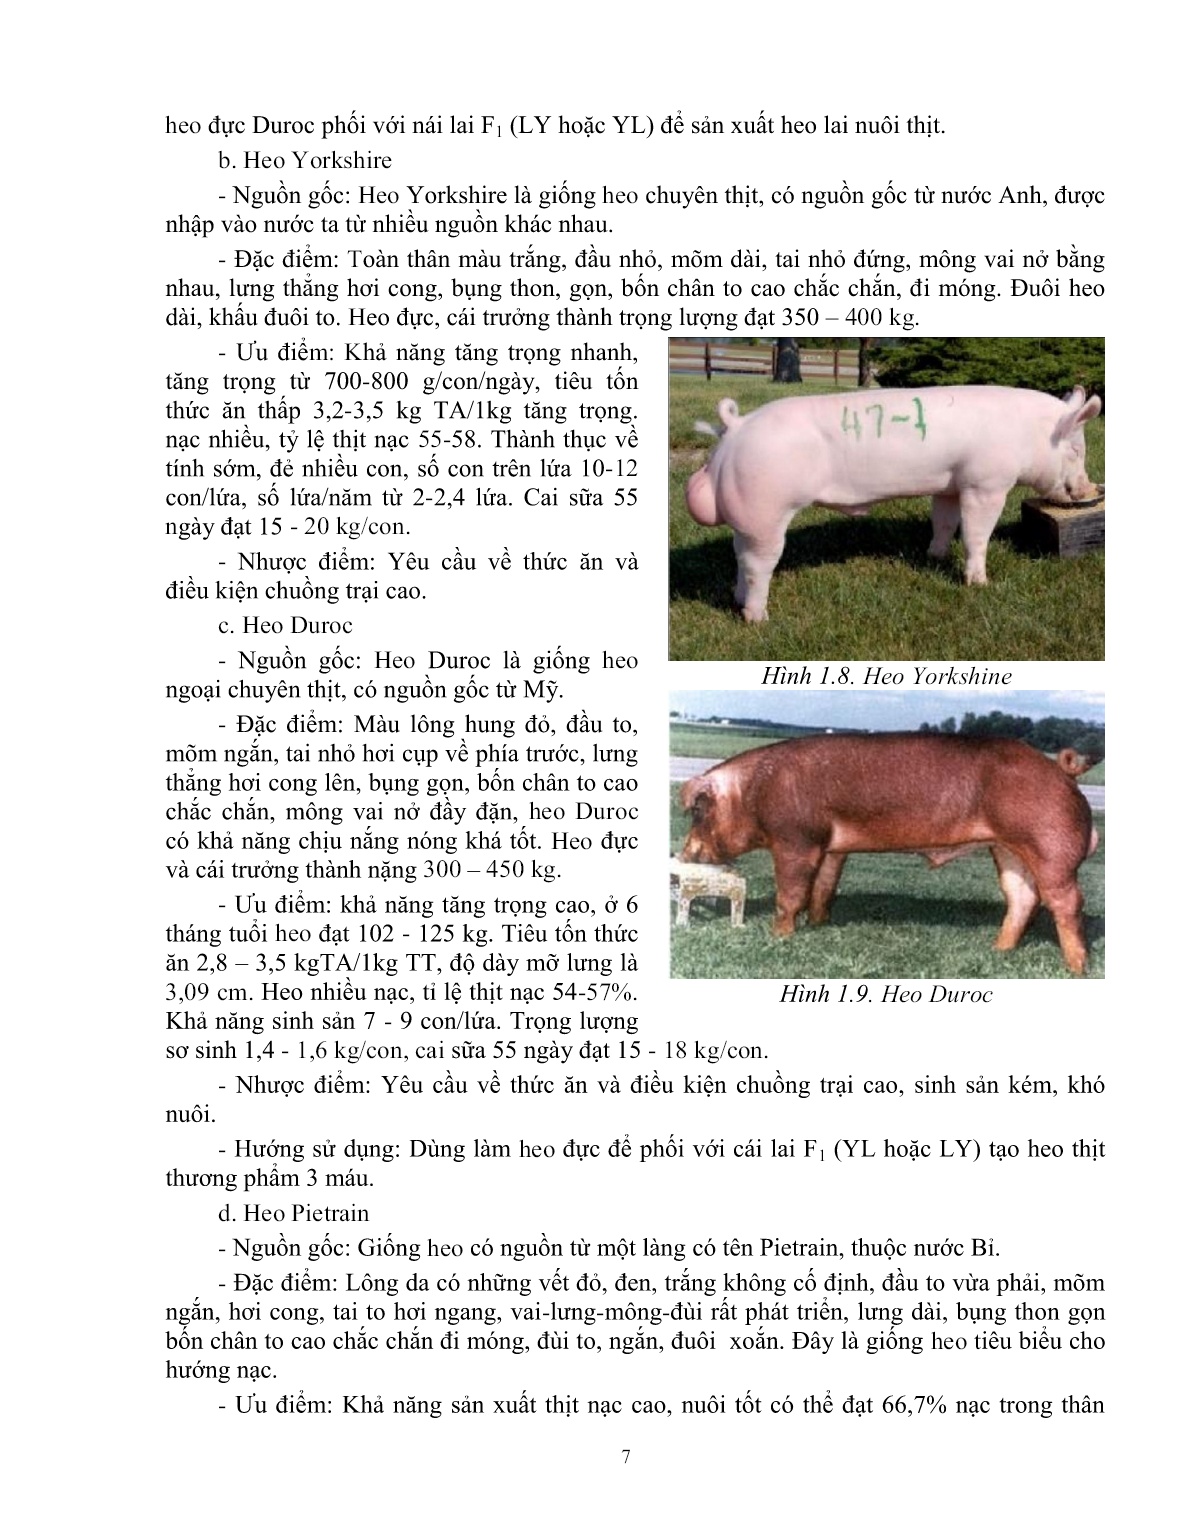 Giáo trình mô đun Chăn nuôi heo thịt (Trình độ: Đào tạo dưới 3 tháng) trang 8